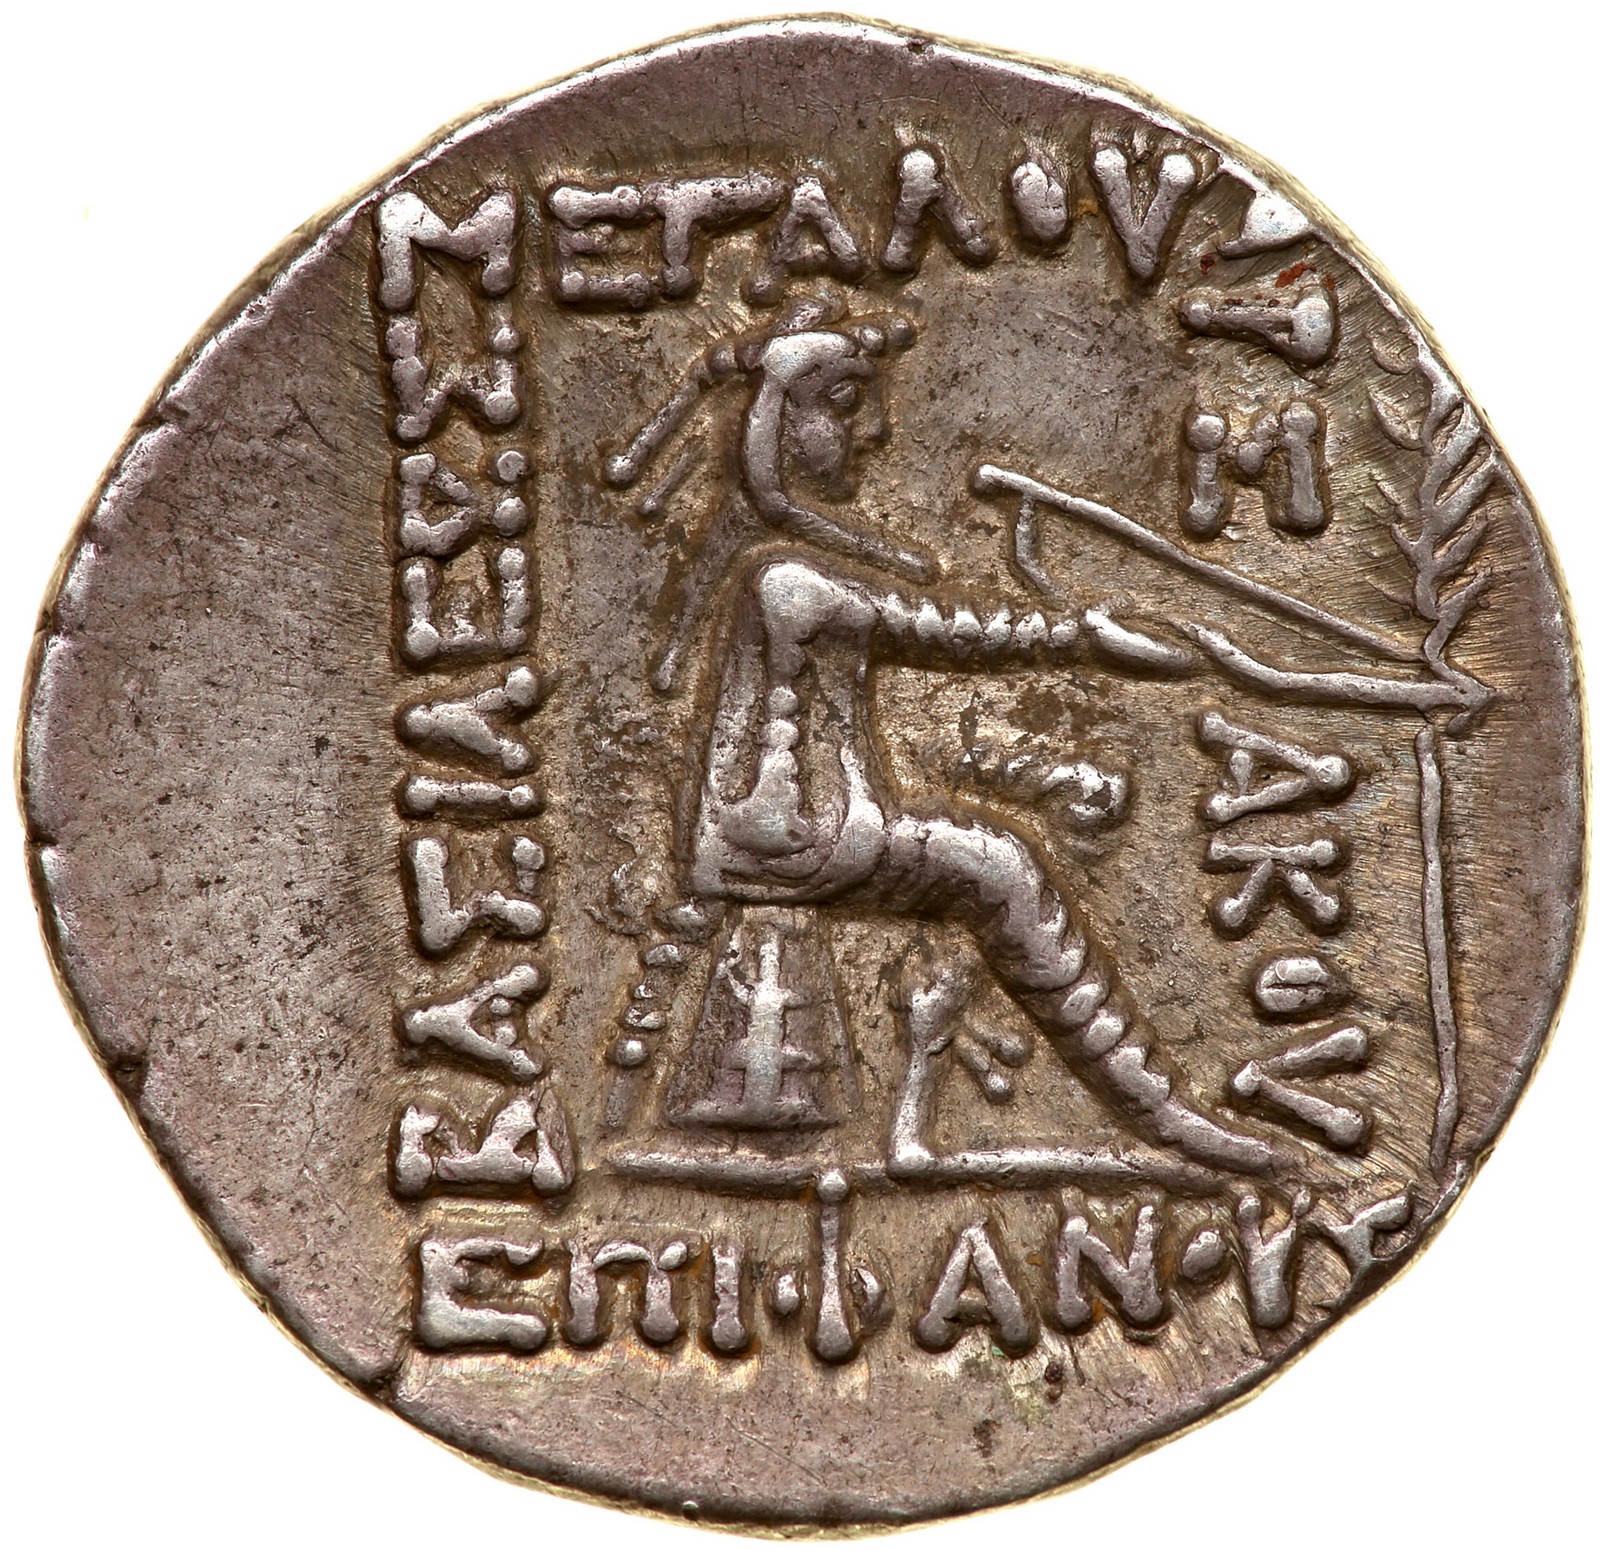 Parthian Kingdom. Mithradates II, c. 123-88 BC. Silver Tetradrachm (15.3 g), 123 BC. Seleukeia on - Image 2 of 2